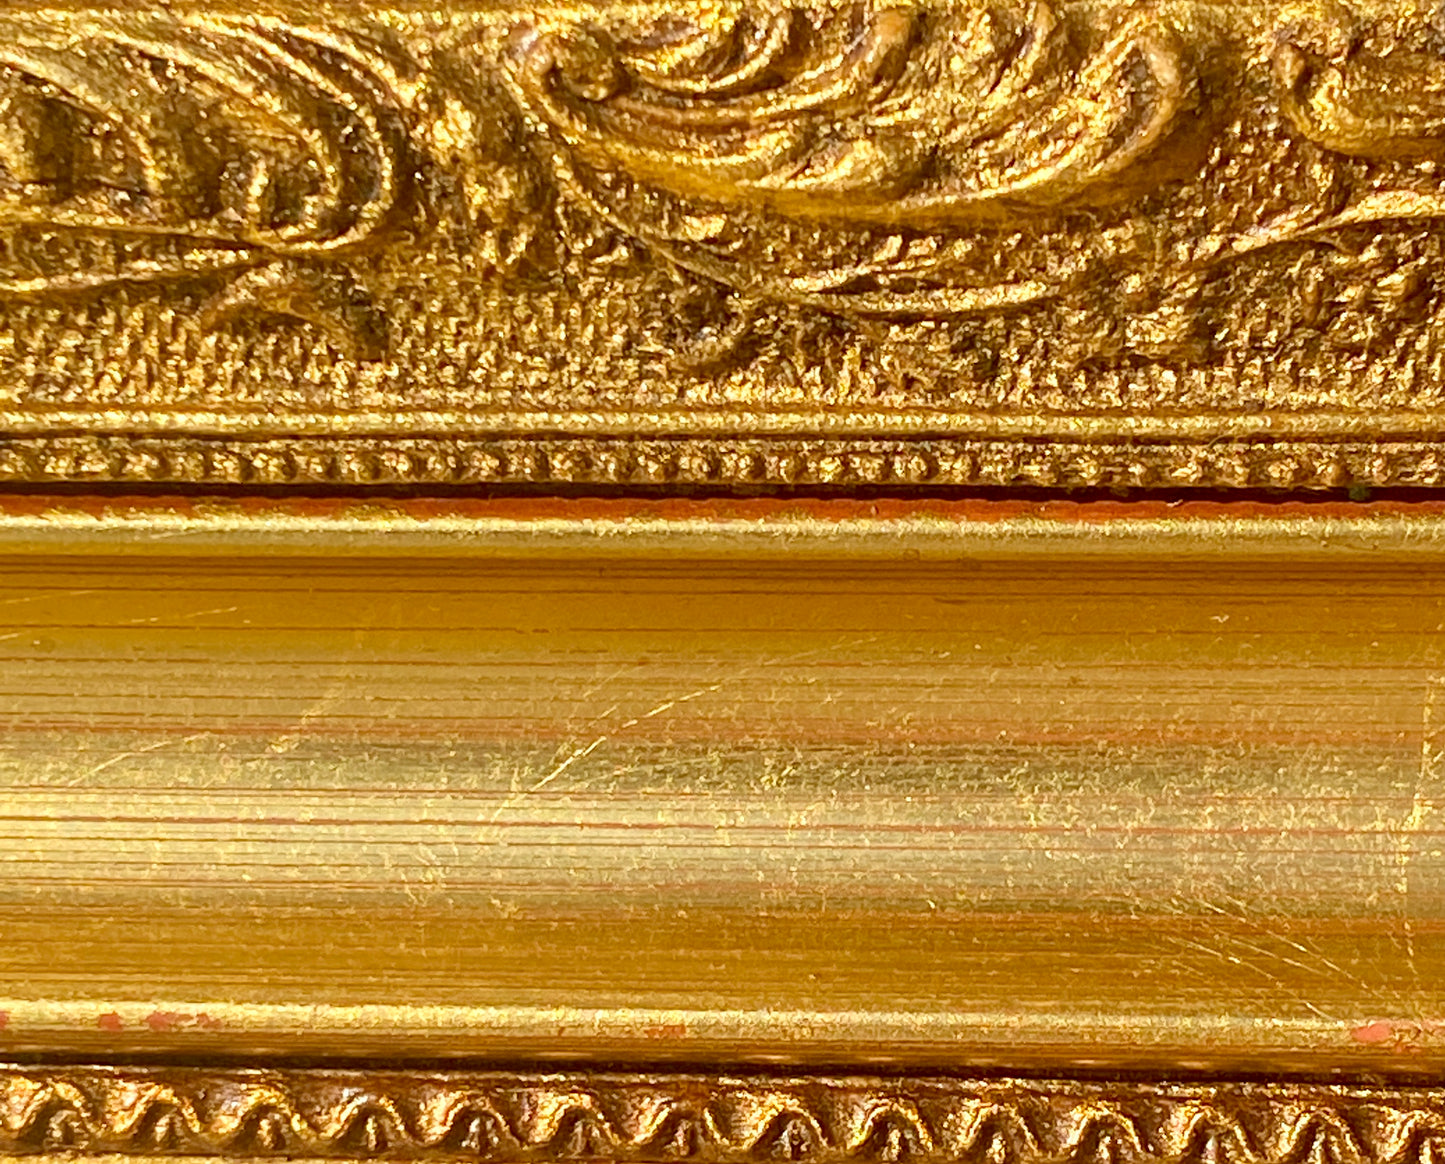 Grand miroir - bois doré - décor moulures